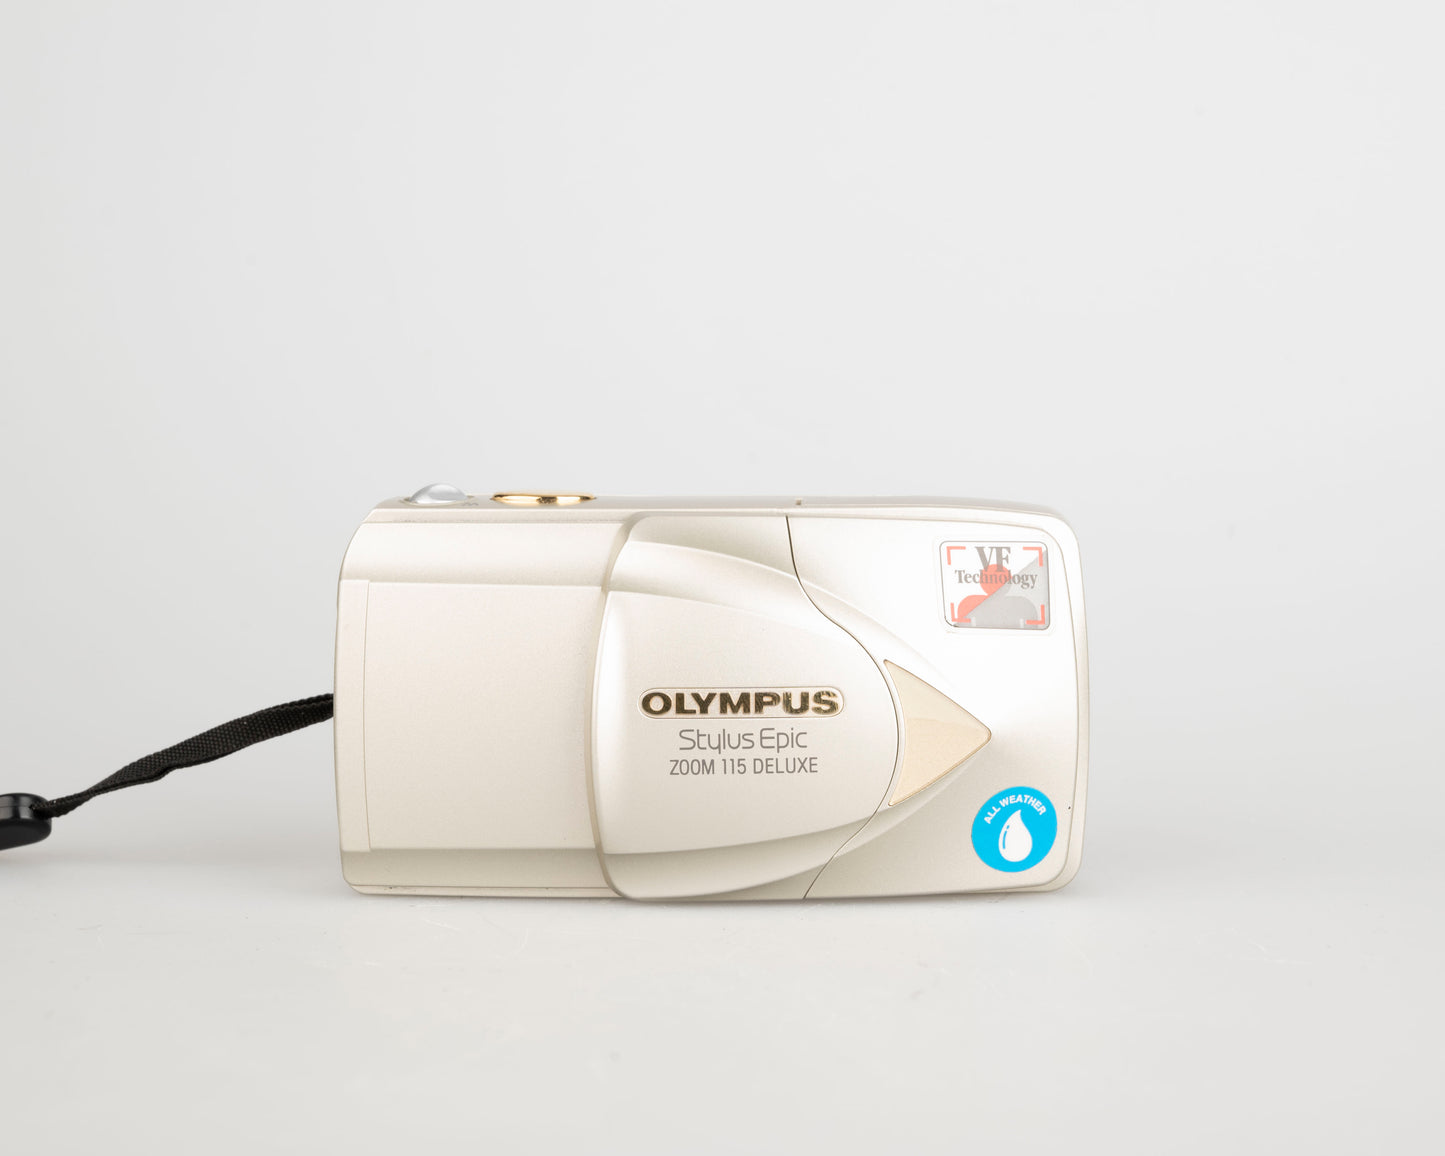 Appareil photo Olympus Stylus Epic Zoom 115 Deluxe 35 mm avec étui (série 3118245)